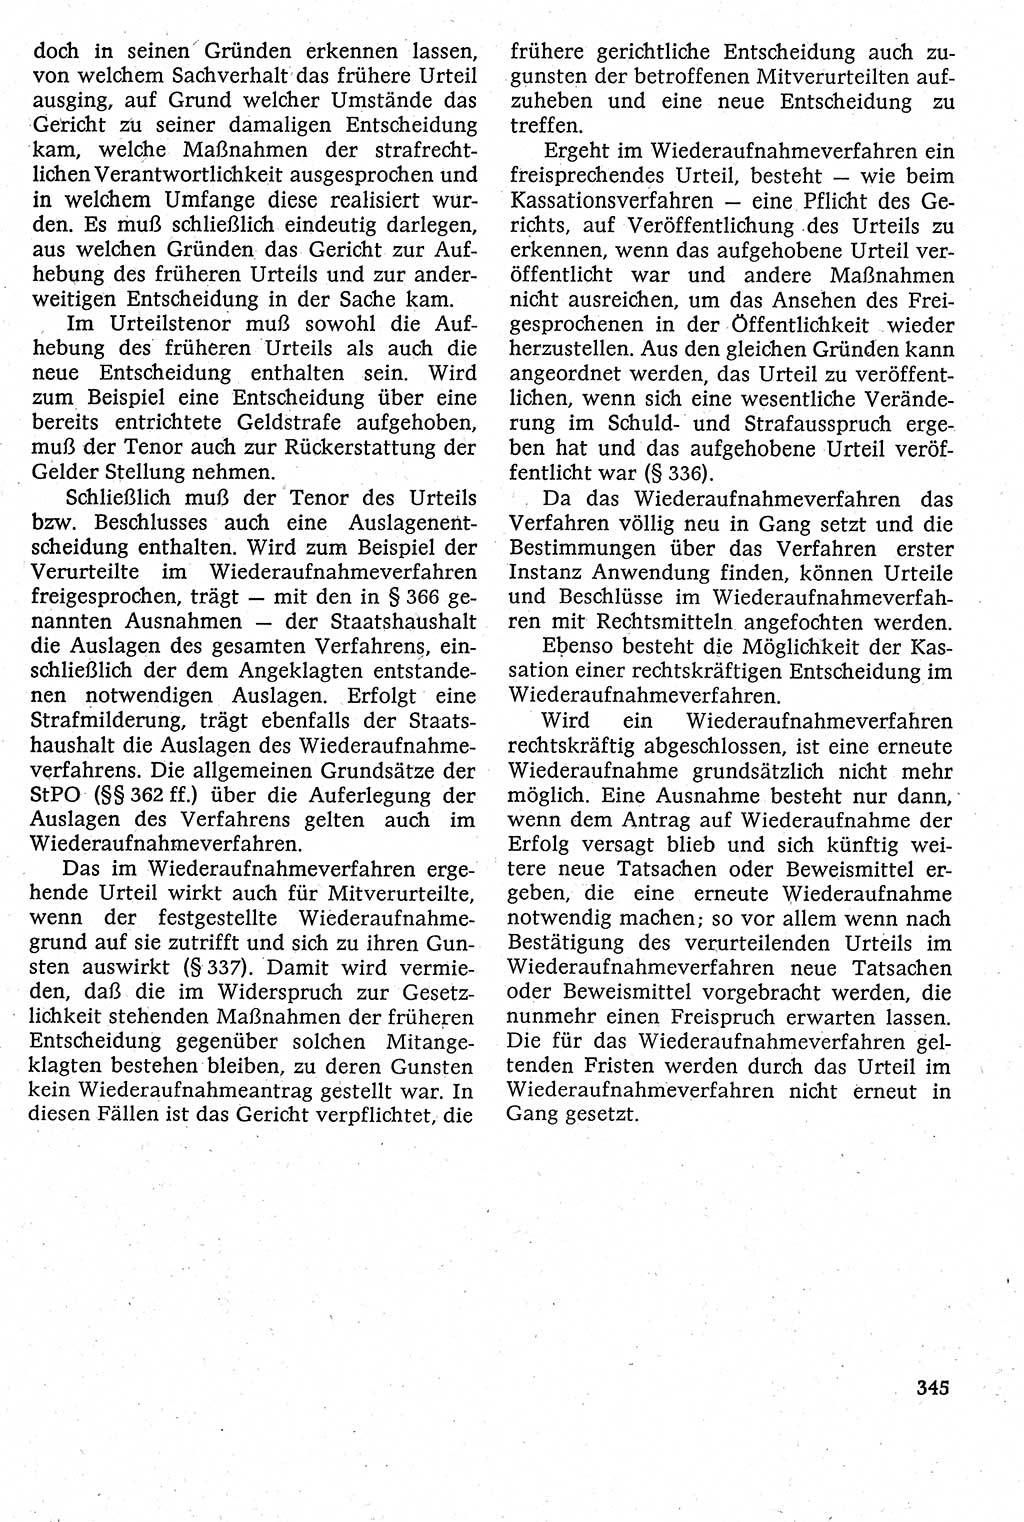 Strafverfahrensrecht [Deutsche Demokratische Republik (DDR)], Lehrbuch 1982, Seite 345 (Strafverf.-R. DDR Lb. 1982, S. 345)